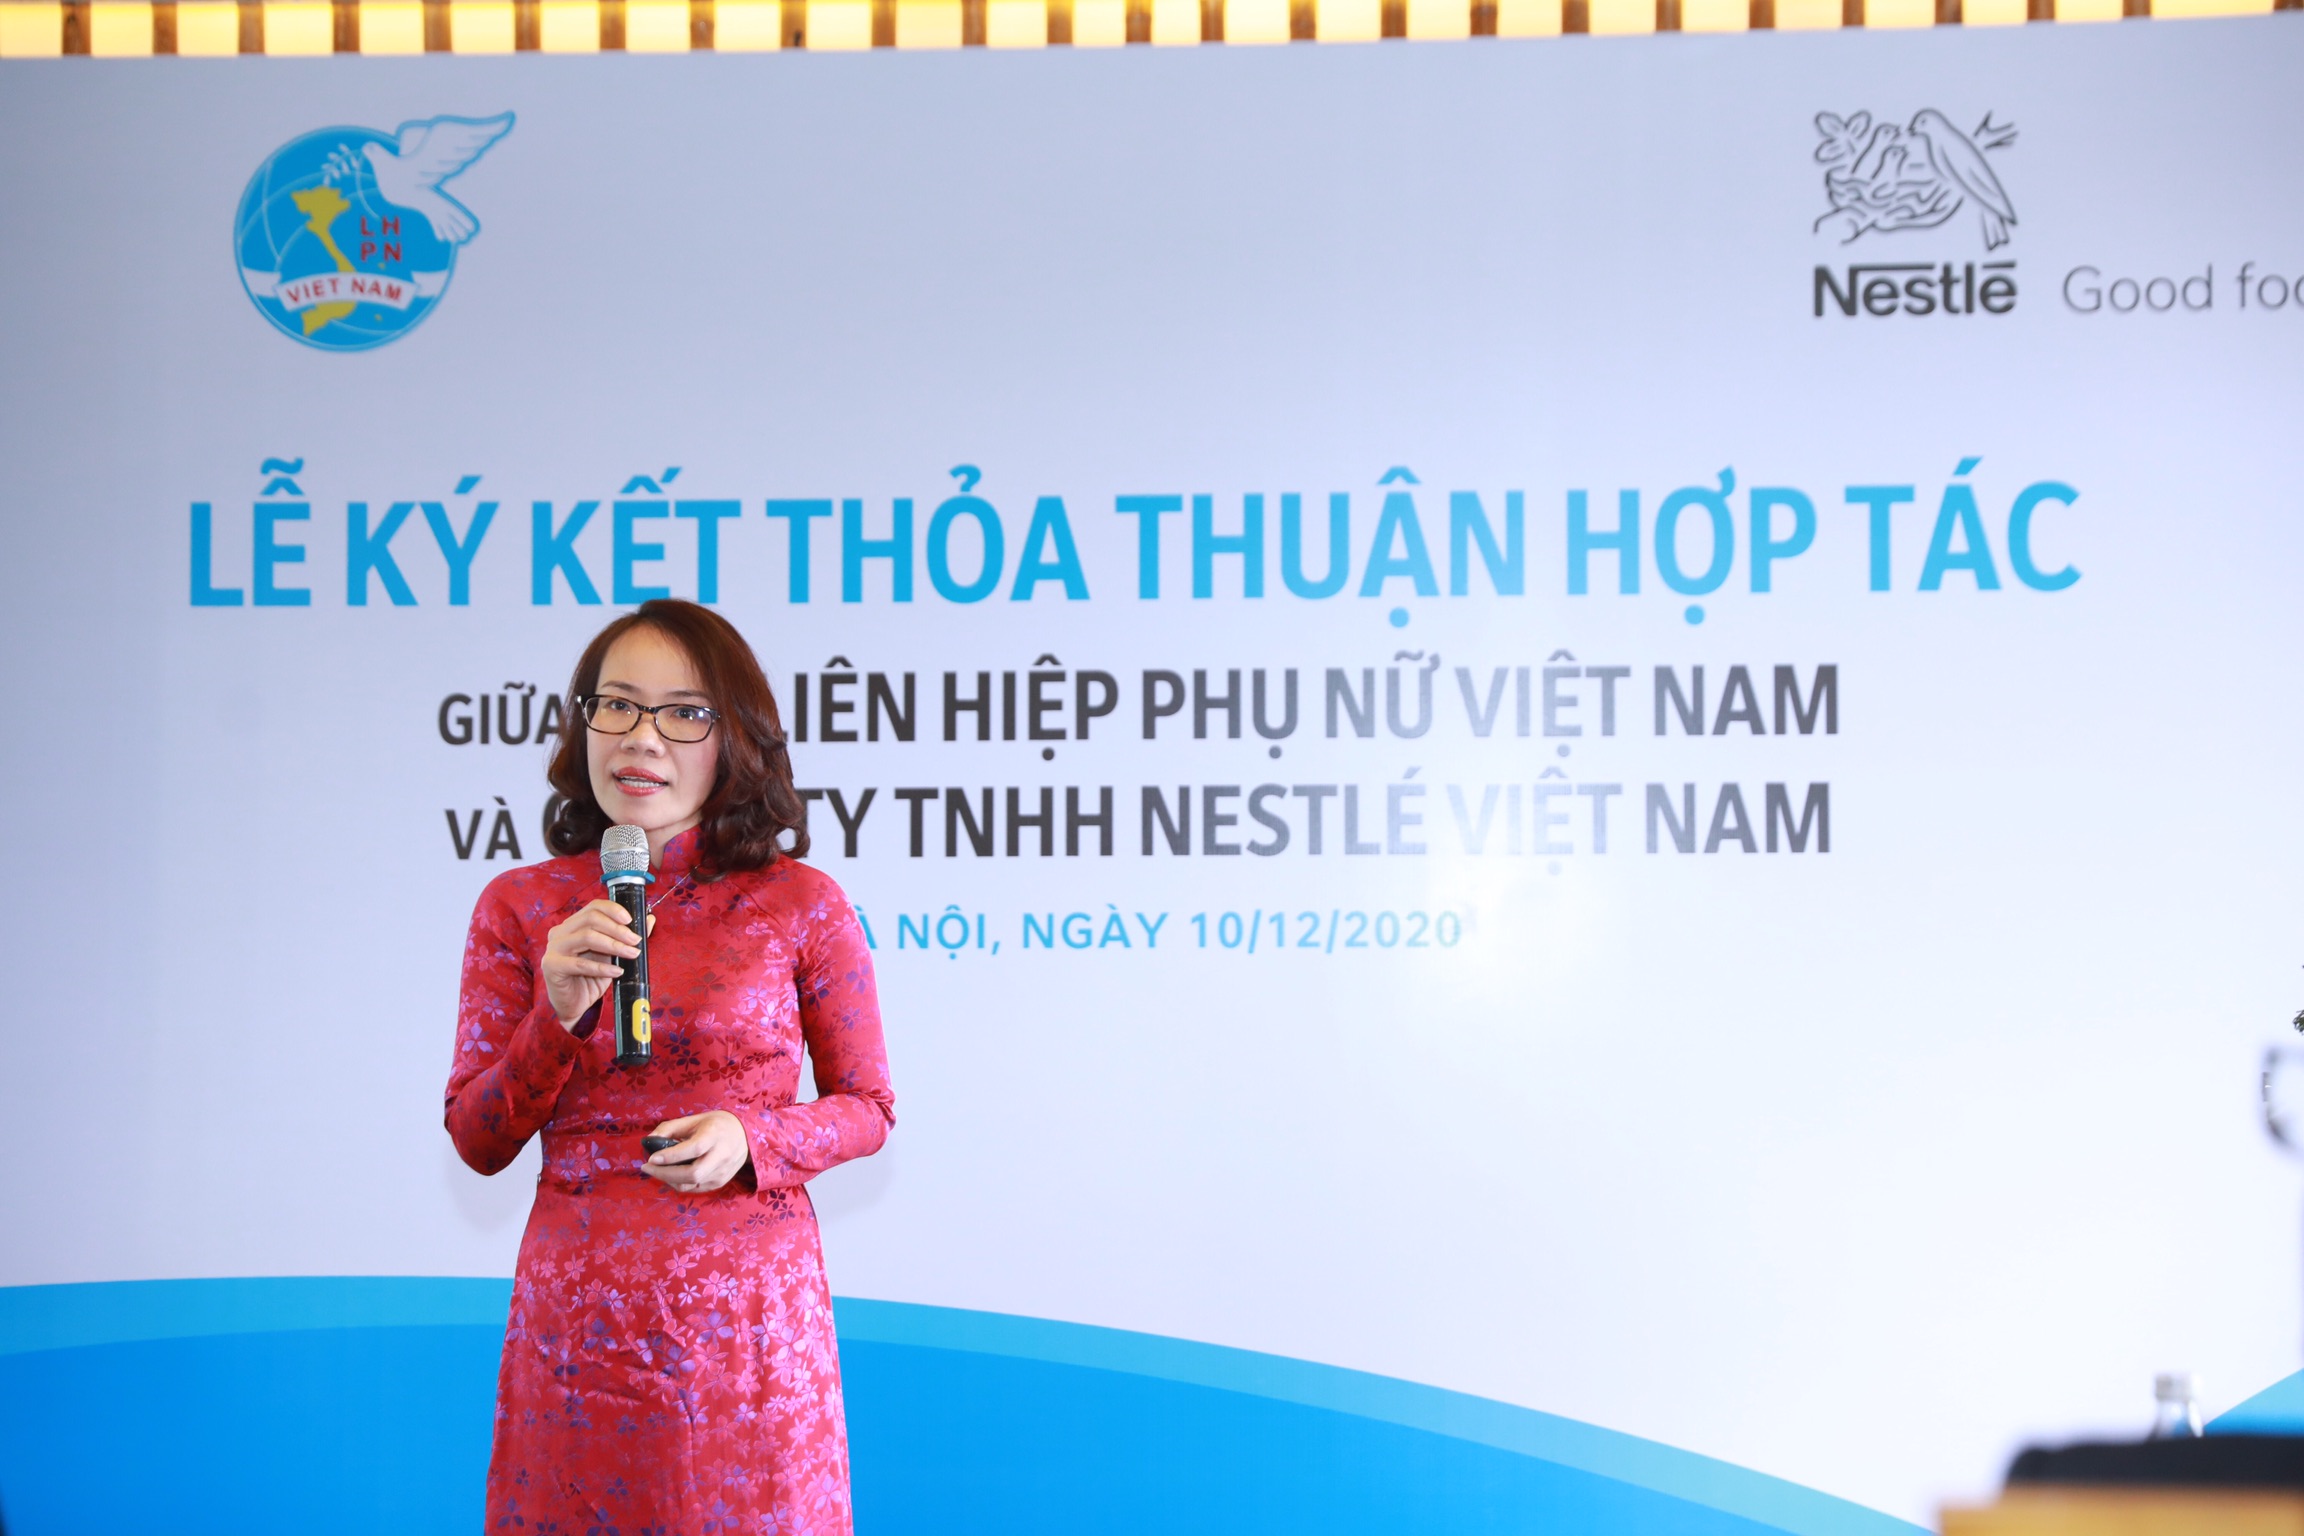 Bà Nguyễn Minh Nguyệt - Giám đốc ngành hàng thực phẩm, Công ty Nestlé Việt Nam trình bày tham luận tại lễ ký kết